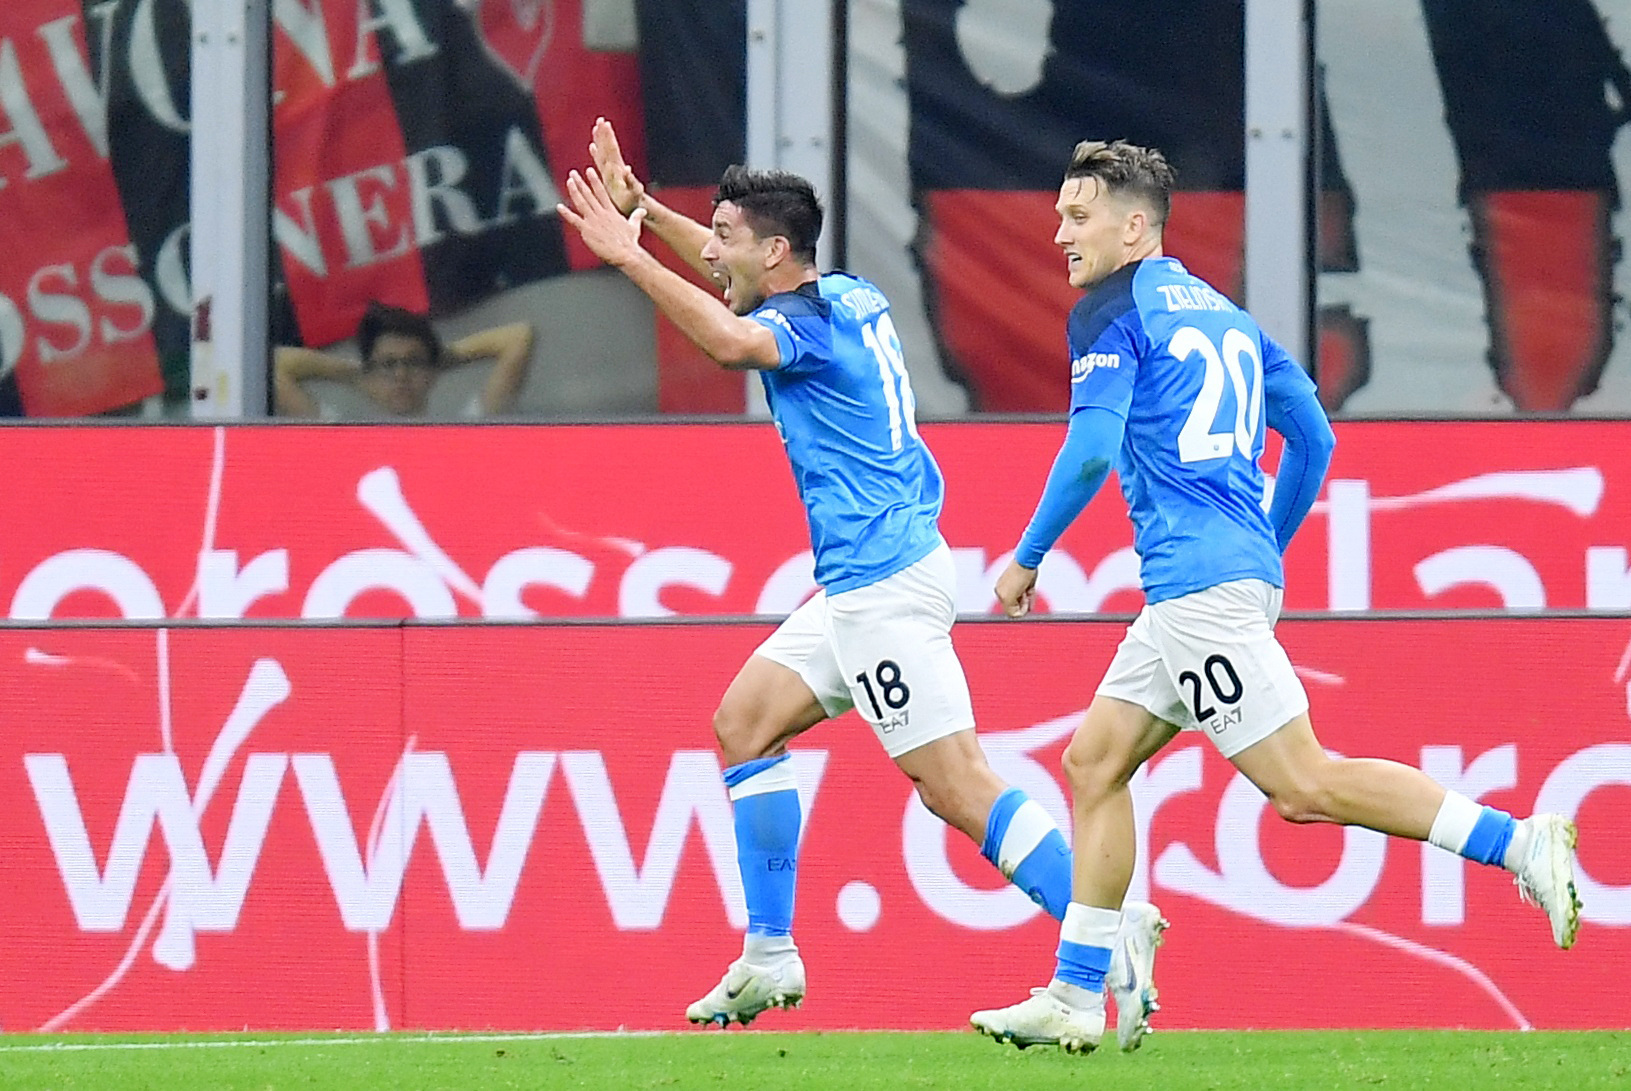 Η Νάπολι πέρασε από τη Μίλαν με 2-1 και ανέβηκε στην κορυφή της Serie A